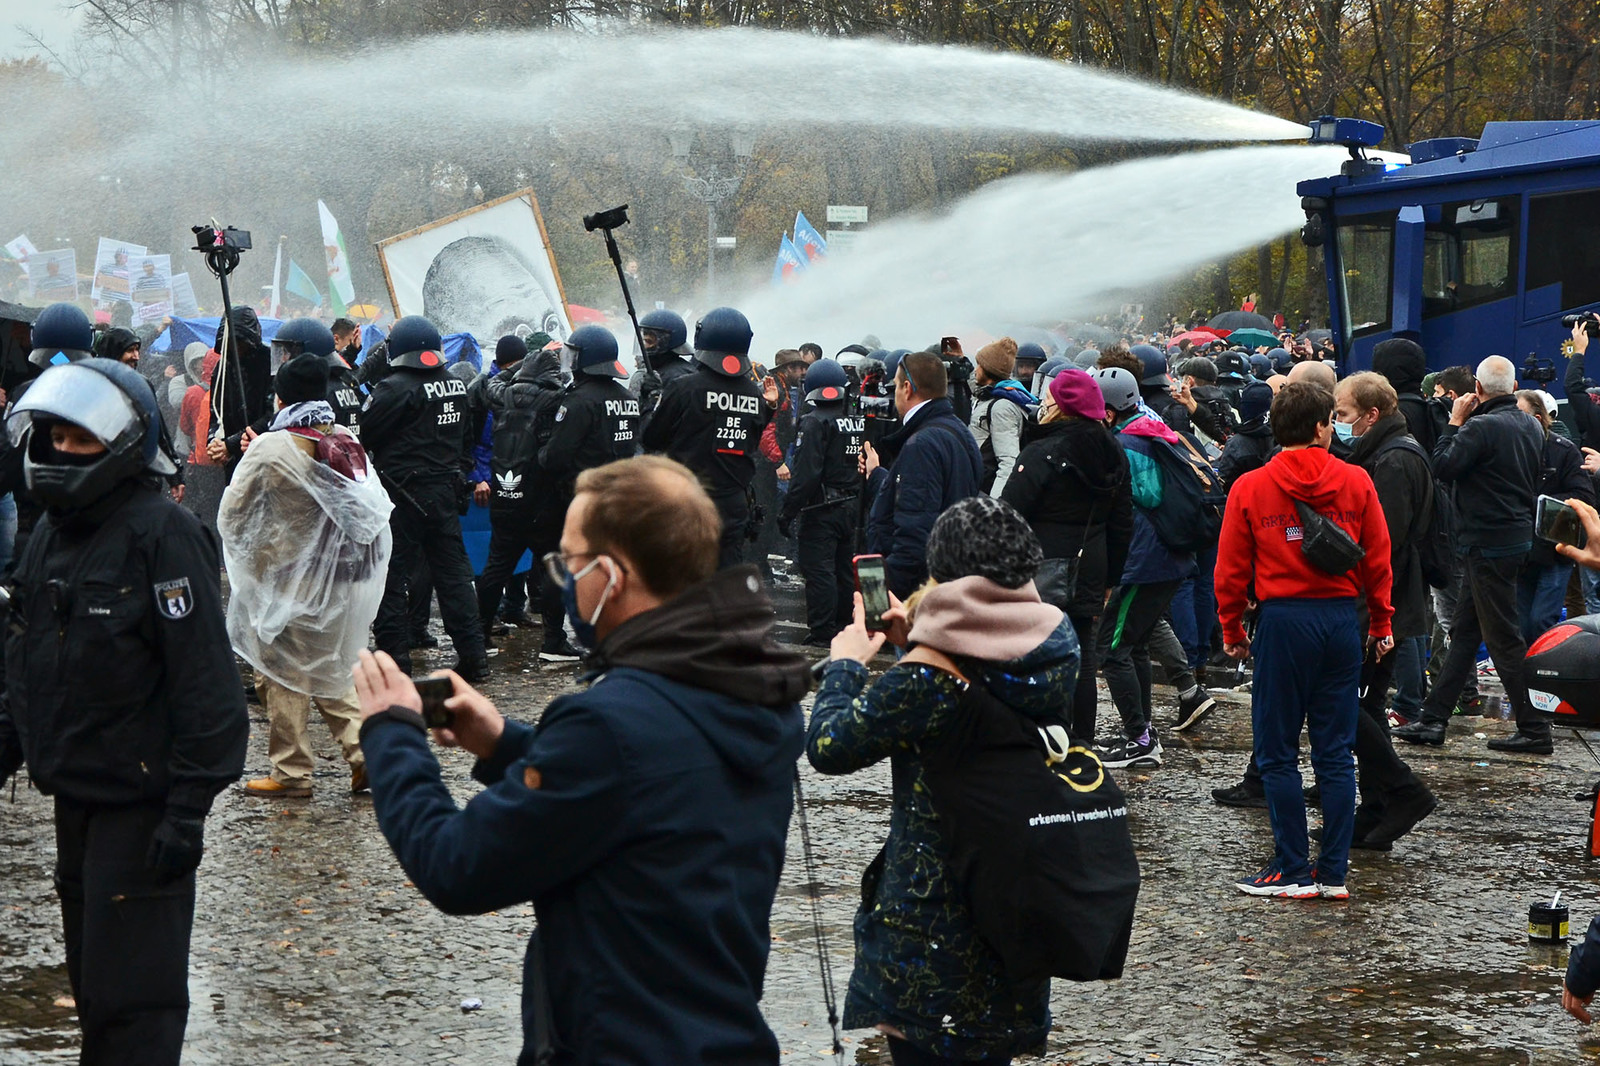 Polizei-Wasserwerfer gegen Demonstranten und Gandhi-Bild am 18. November 2020 in Berlin